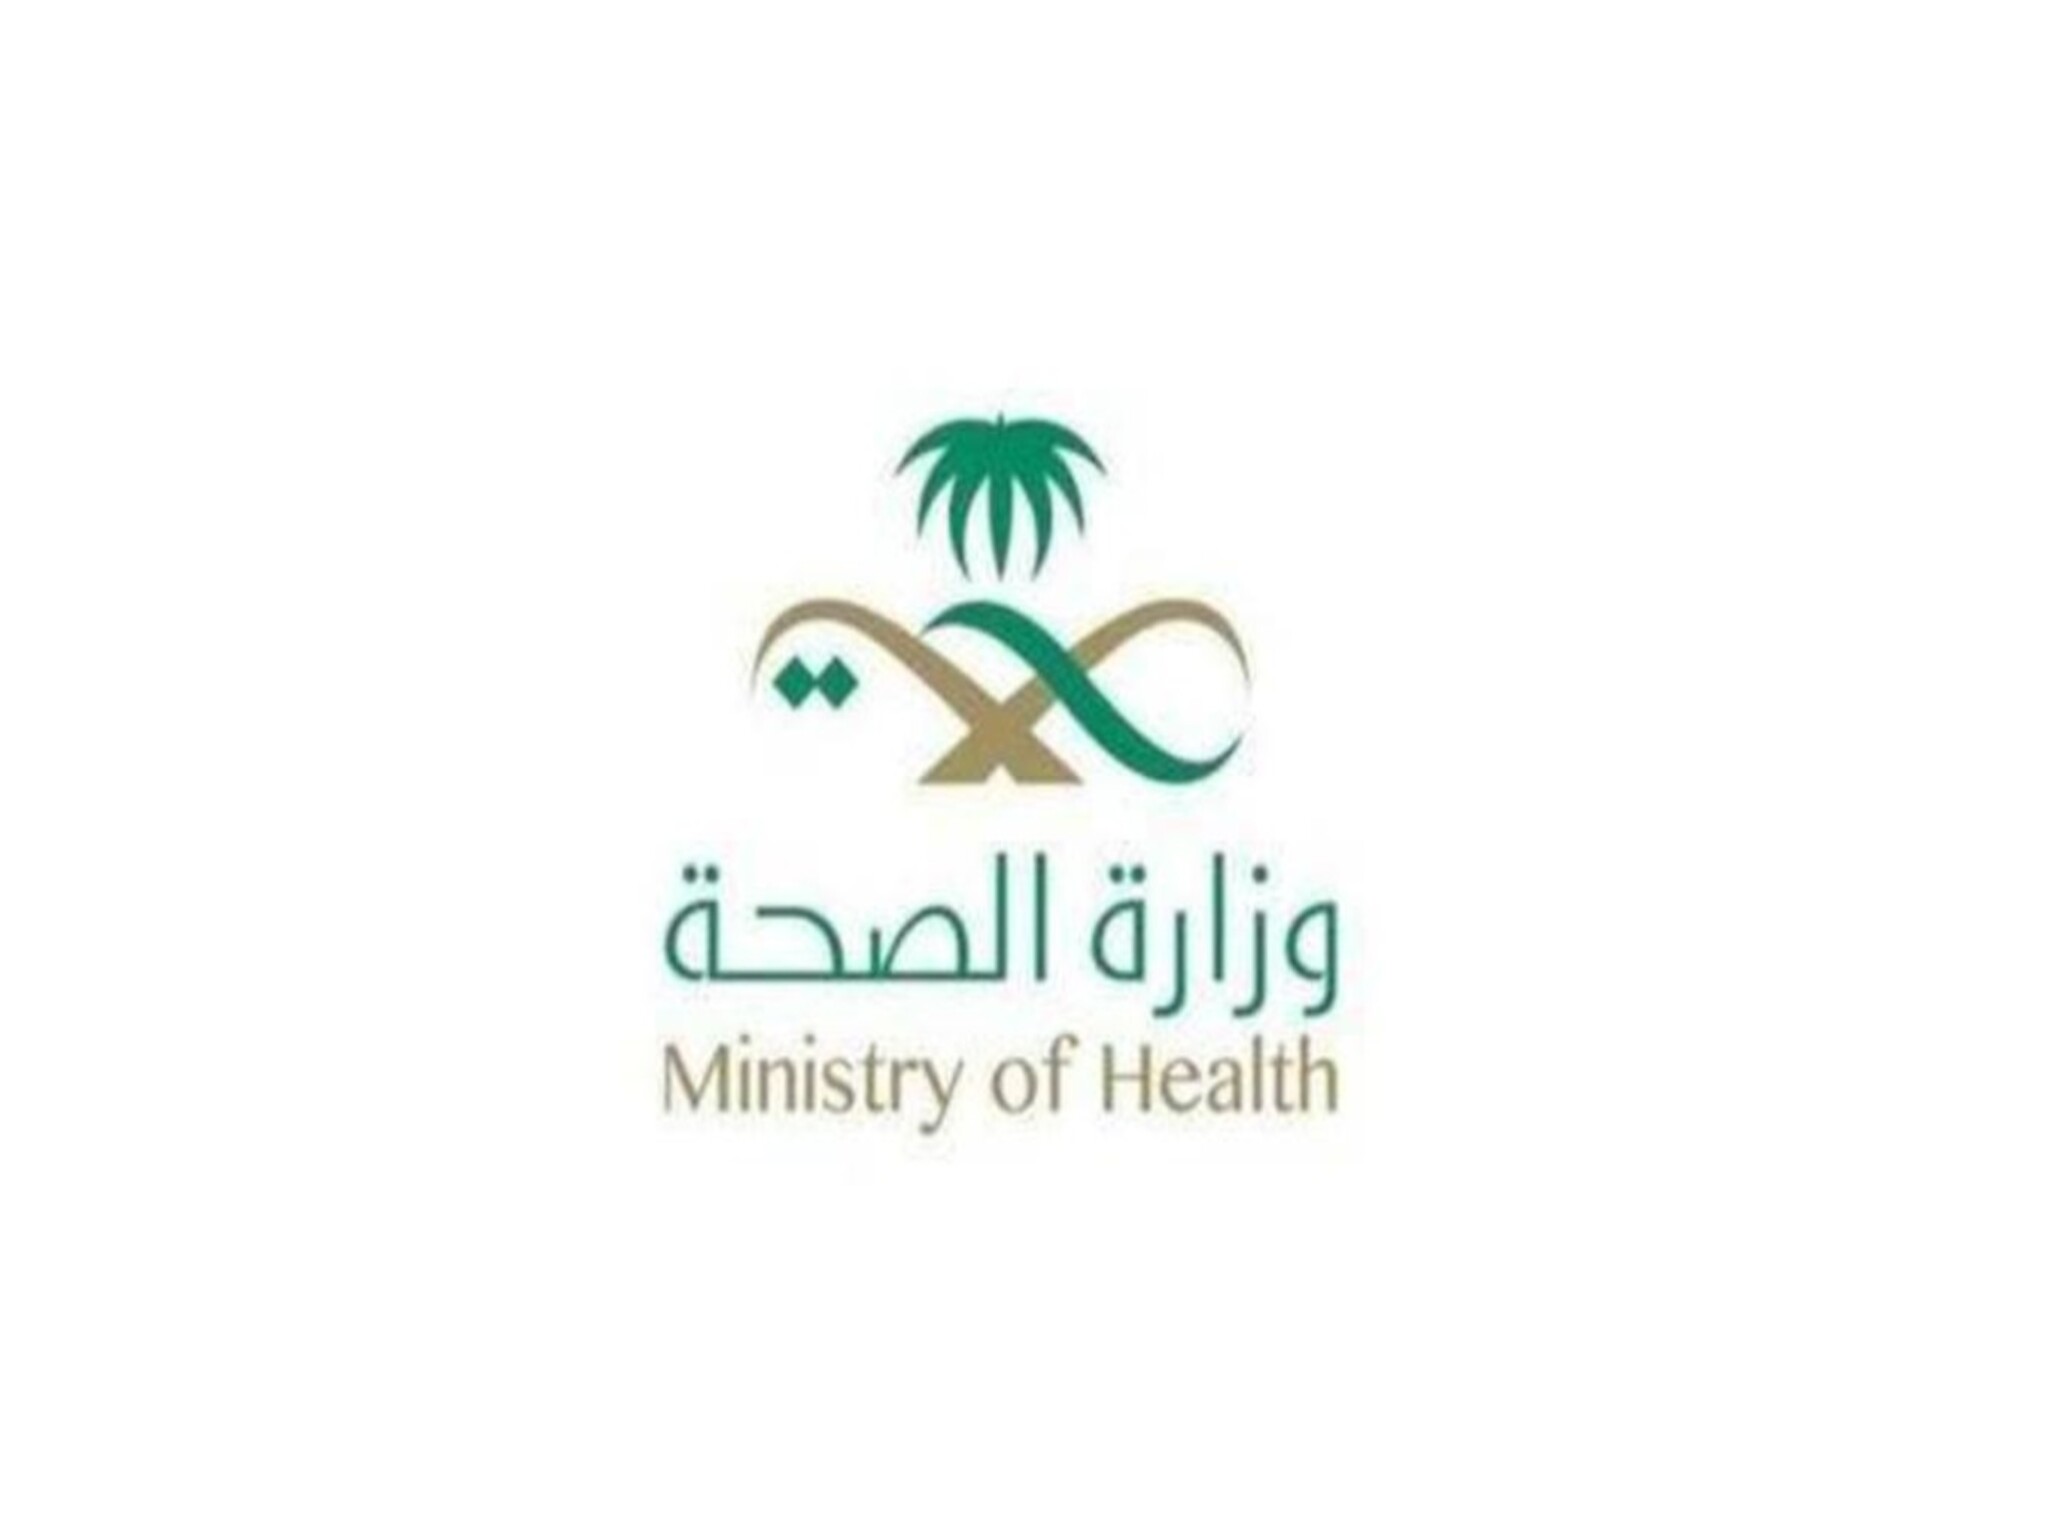 خطوات حجز موعد في المراكز الصحية بالمملكة السعودية إلكترونيًا 1445هـ